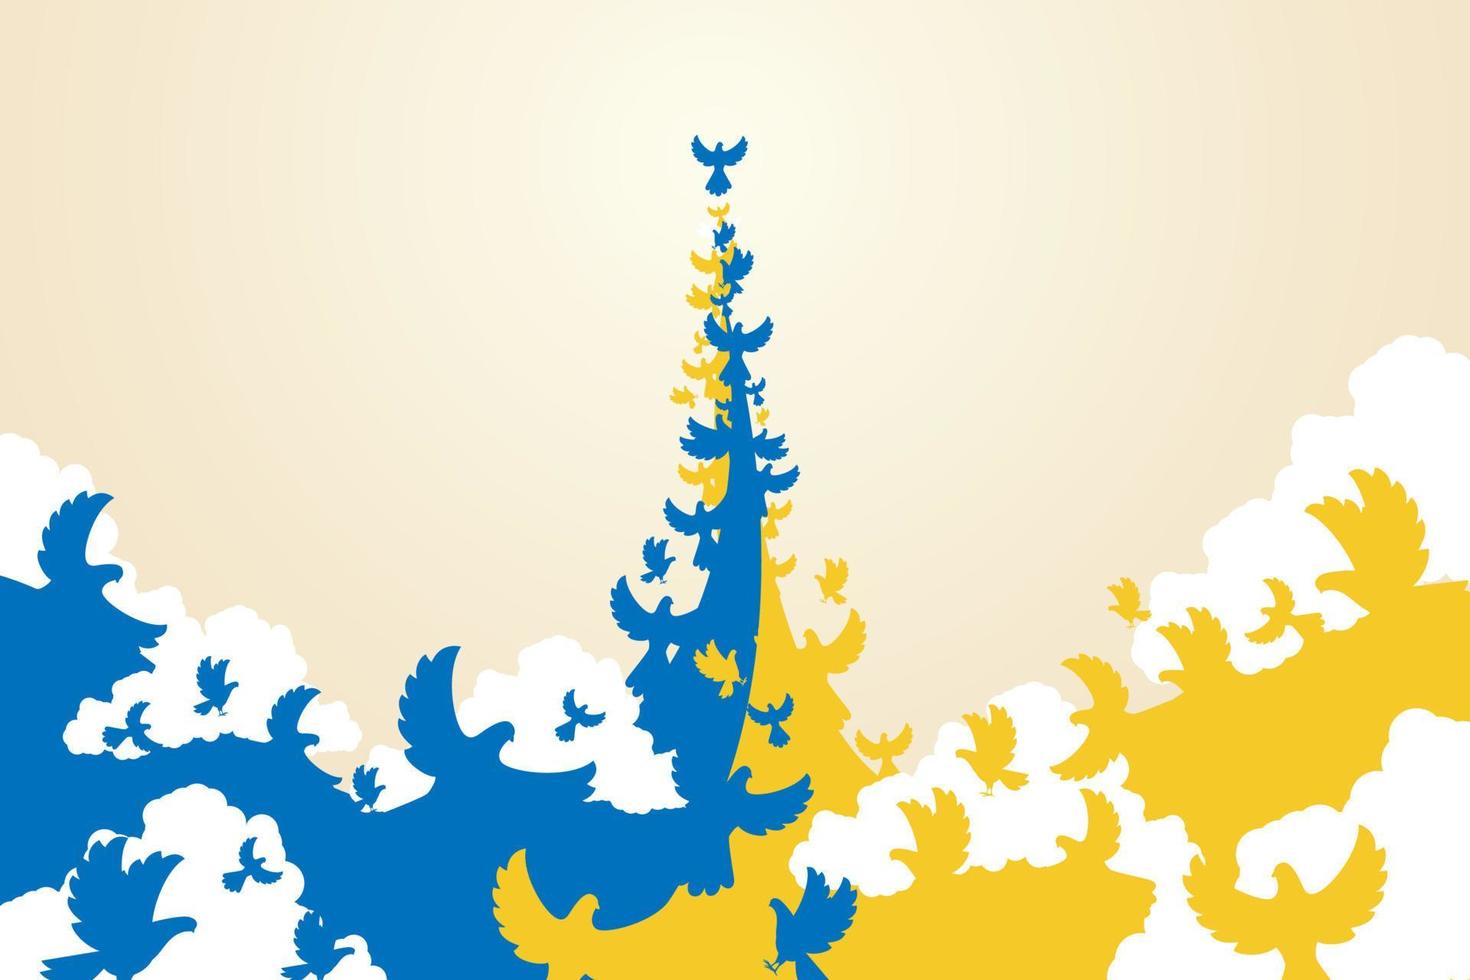 blå duvor och gula duvor flög tillsammans för att bilda flagga ukrainska. vektor